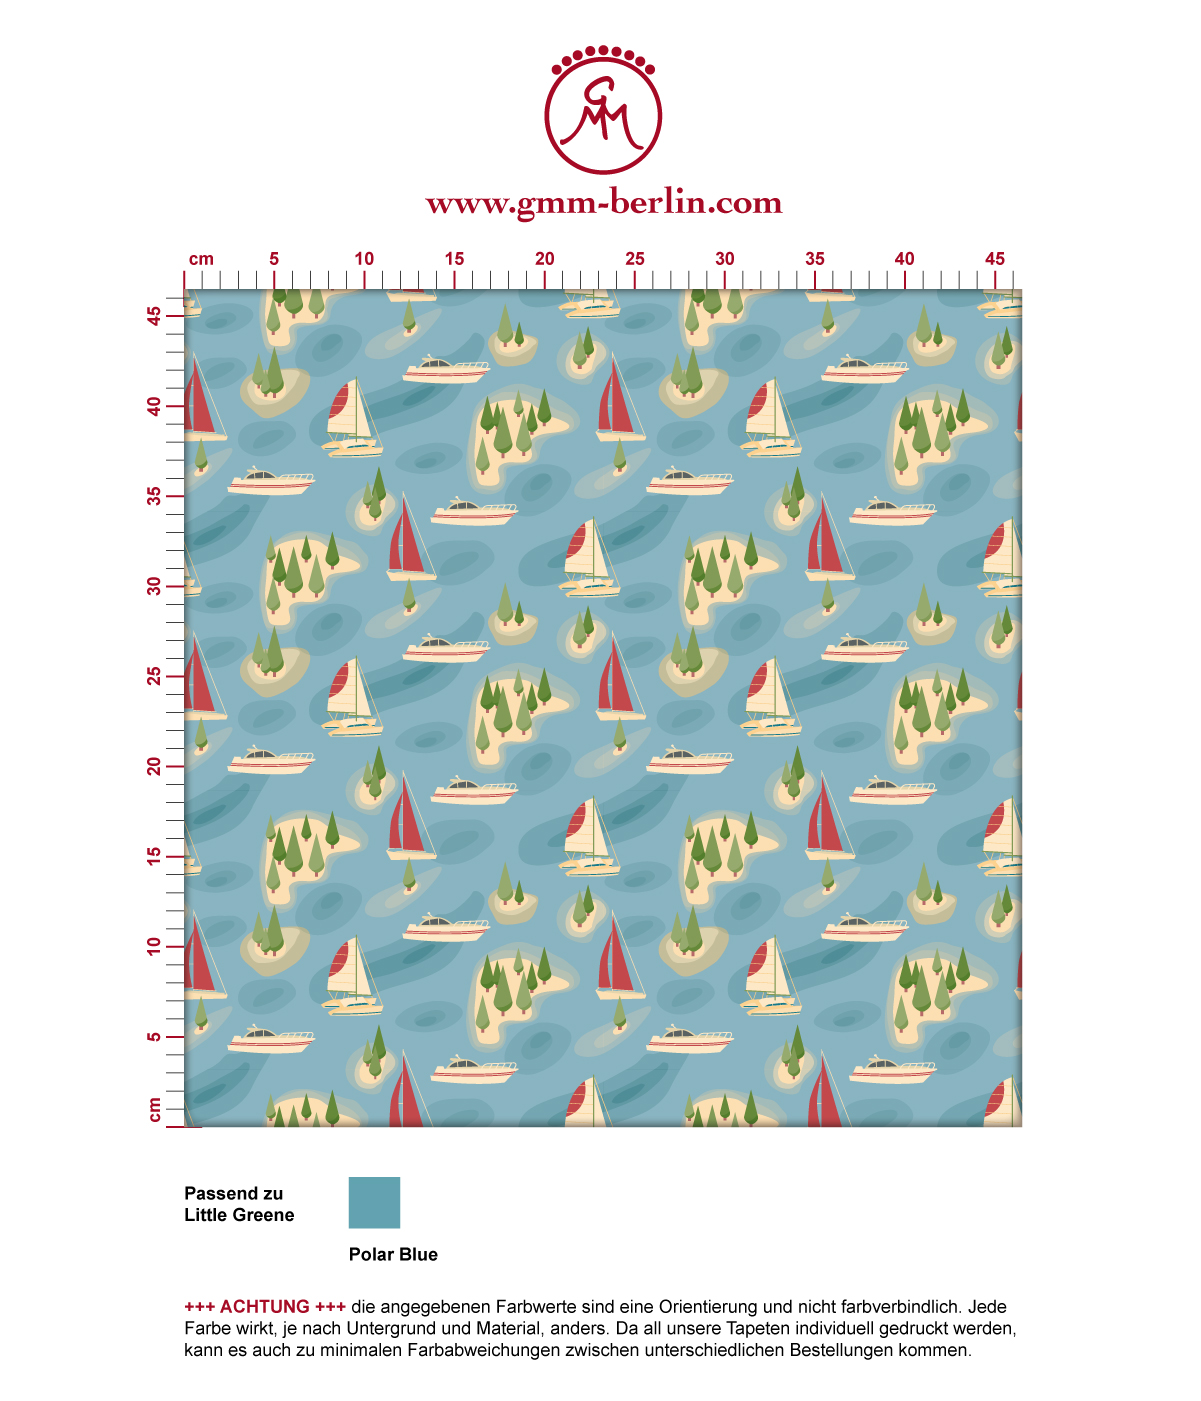 Moderne blaue Tapete "Insel Hopping" mit Yachten und Segel-Booten in gelb angepasst an Little Greene Wandfarben. Aus dem GMM-BERLIN.com Sortiment: Schöne Tapeten in der Farbe: gelb